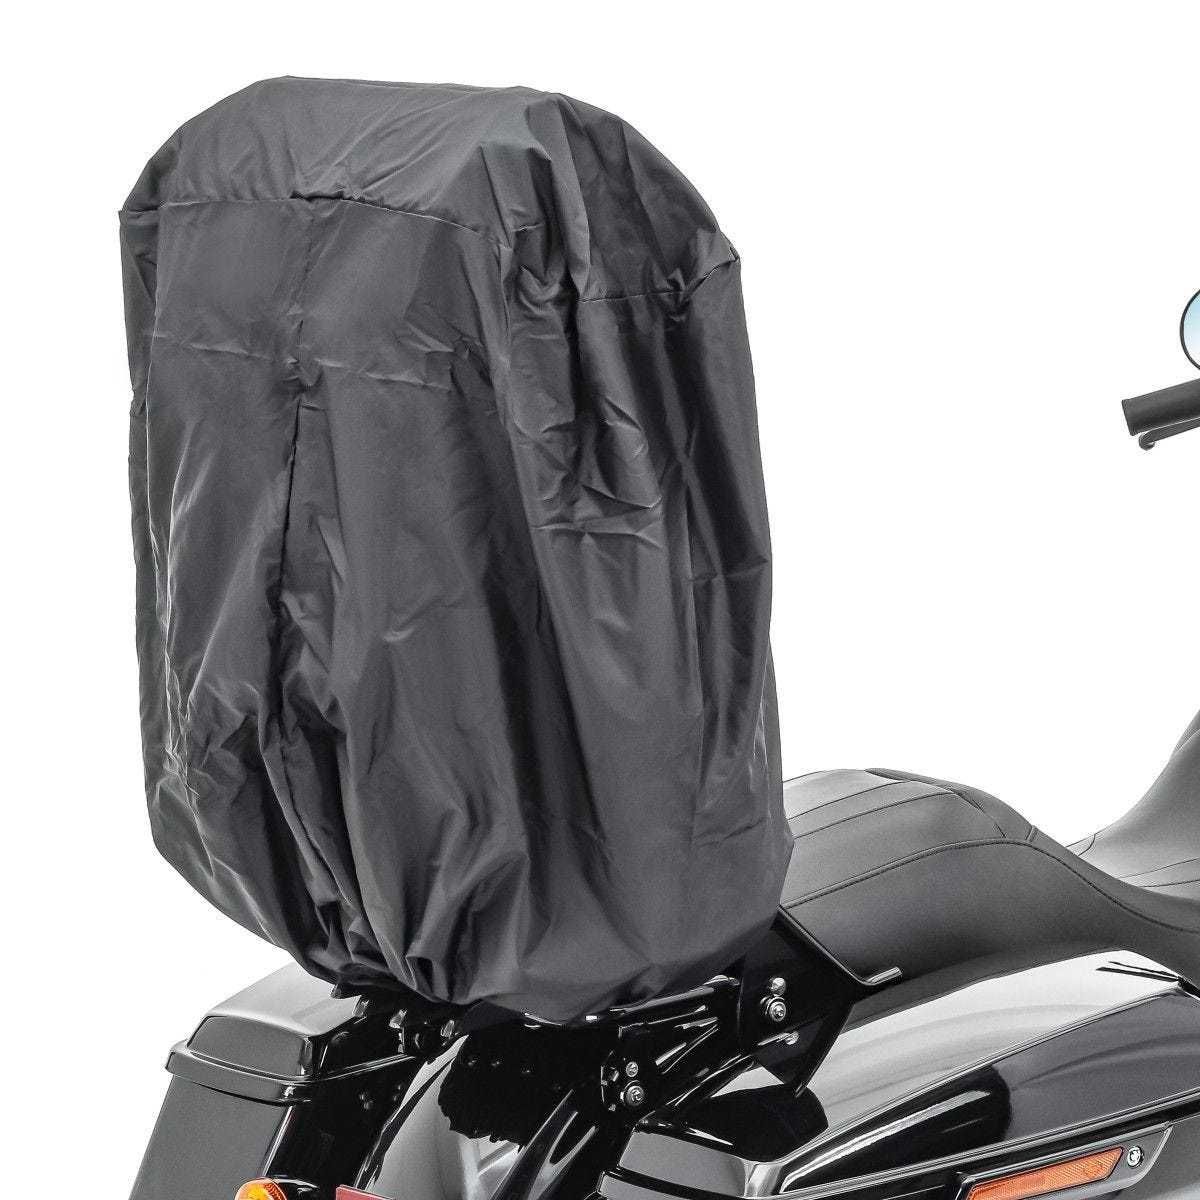 Geanta moto Sissy Bar Bag Craftride cu roll bag codita culoare negru